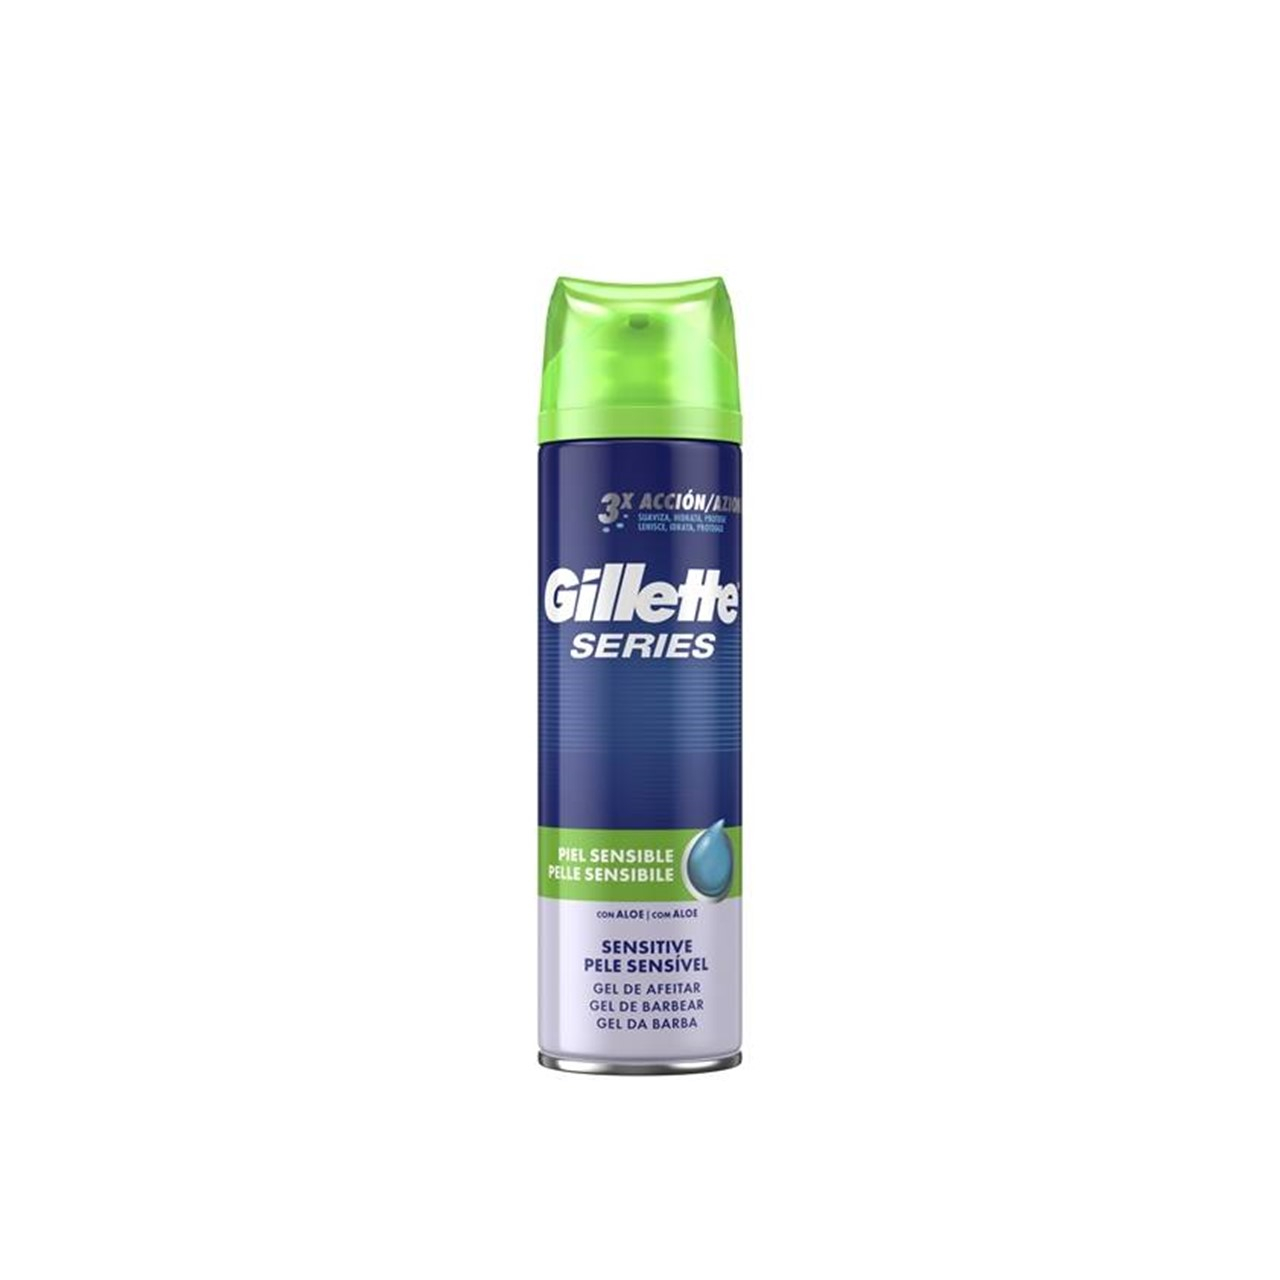 Gillette Series Sensitive Skin Shaving Gel 200ml (6.76floz)